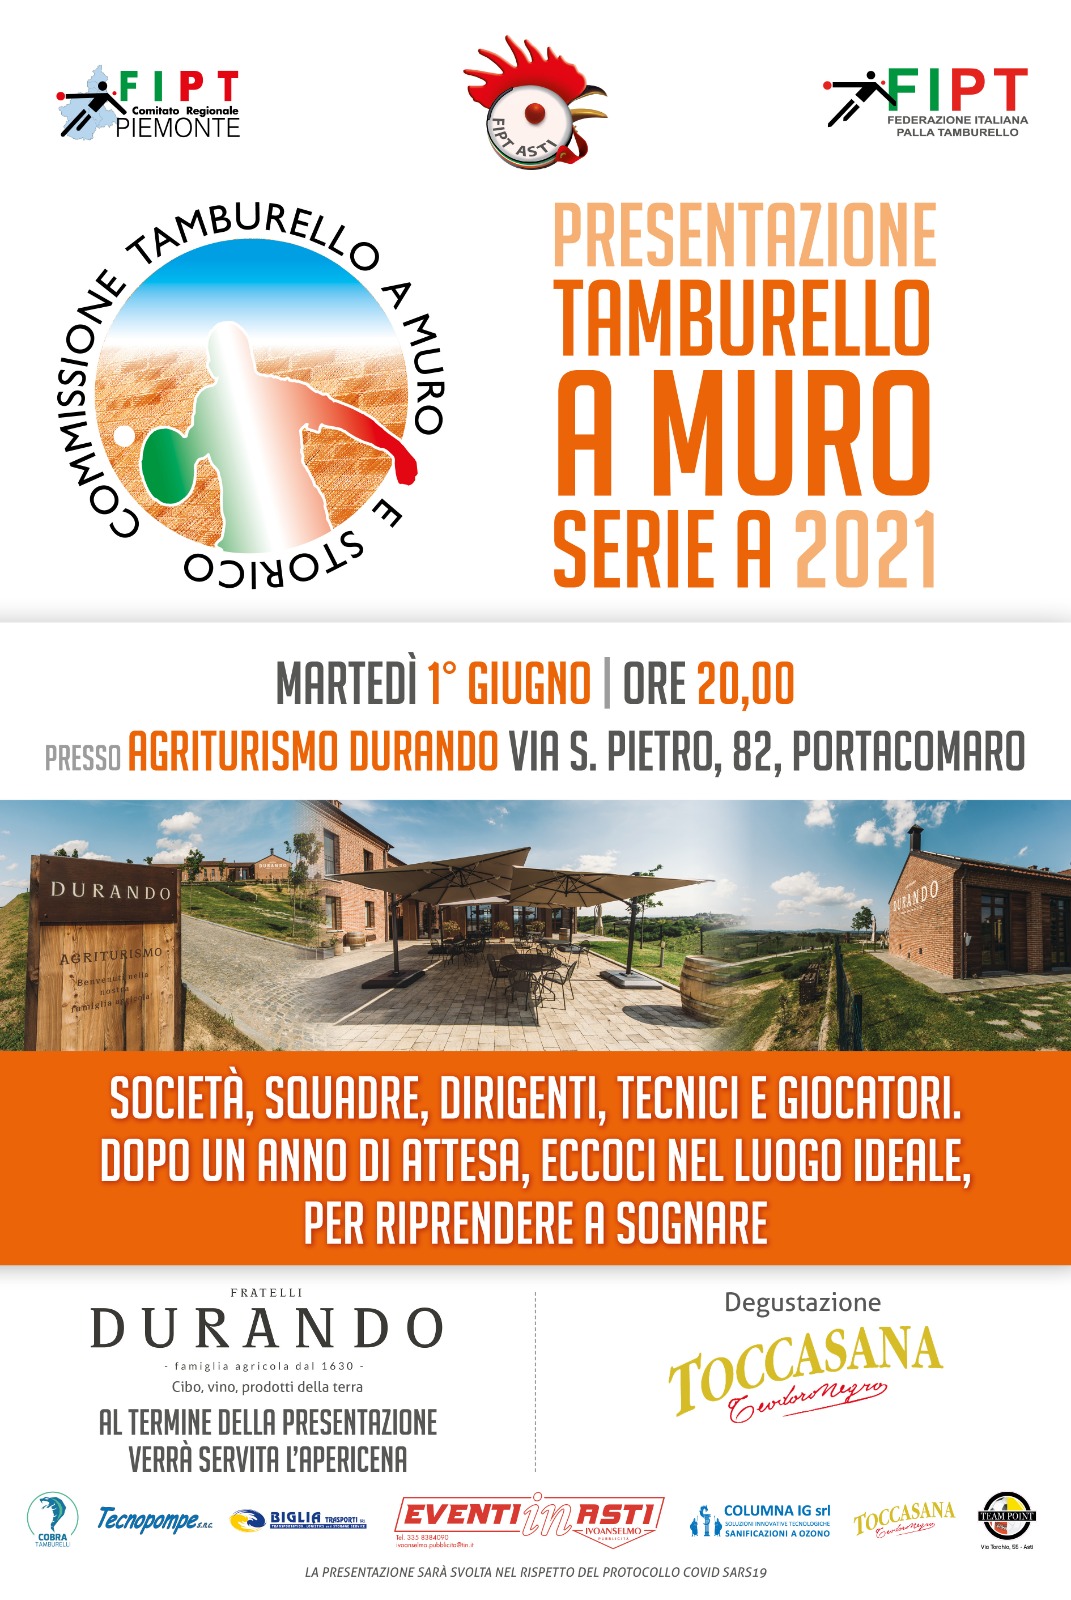 images/News_2021/MURO/Presentazione_Tamburello_a_Muro_Serie_A_2021.jpeg